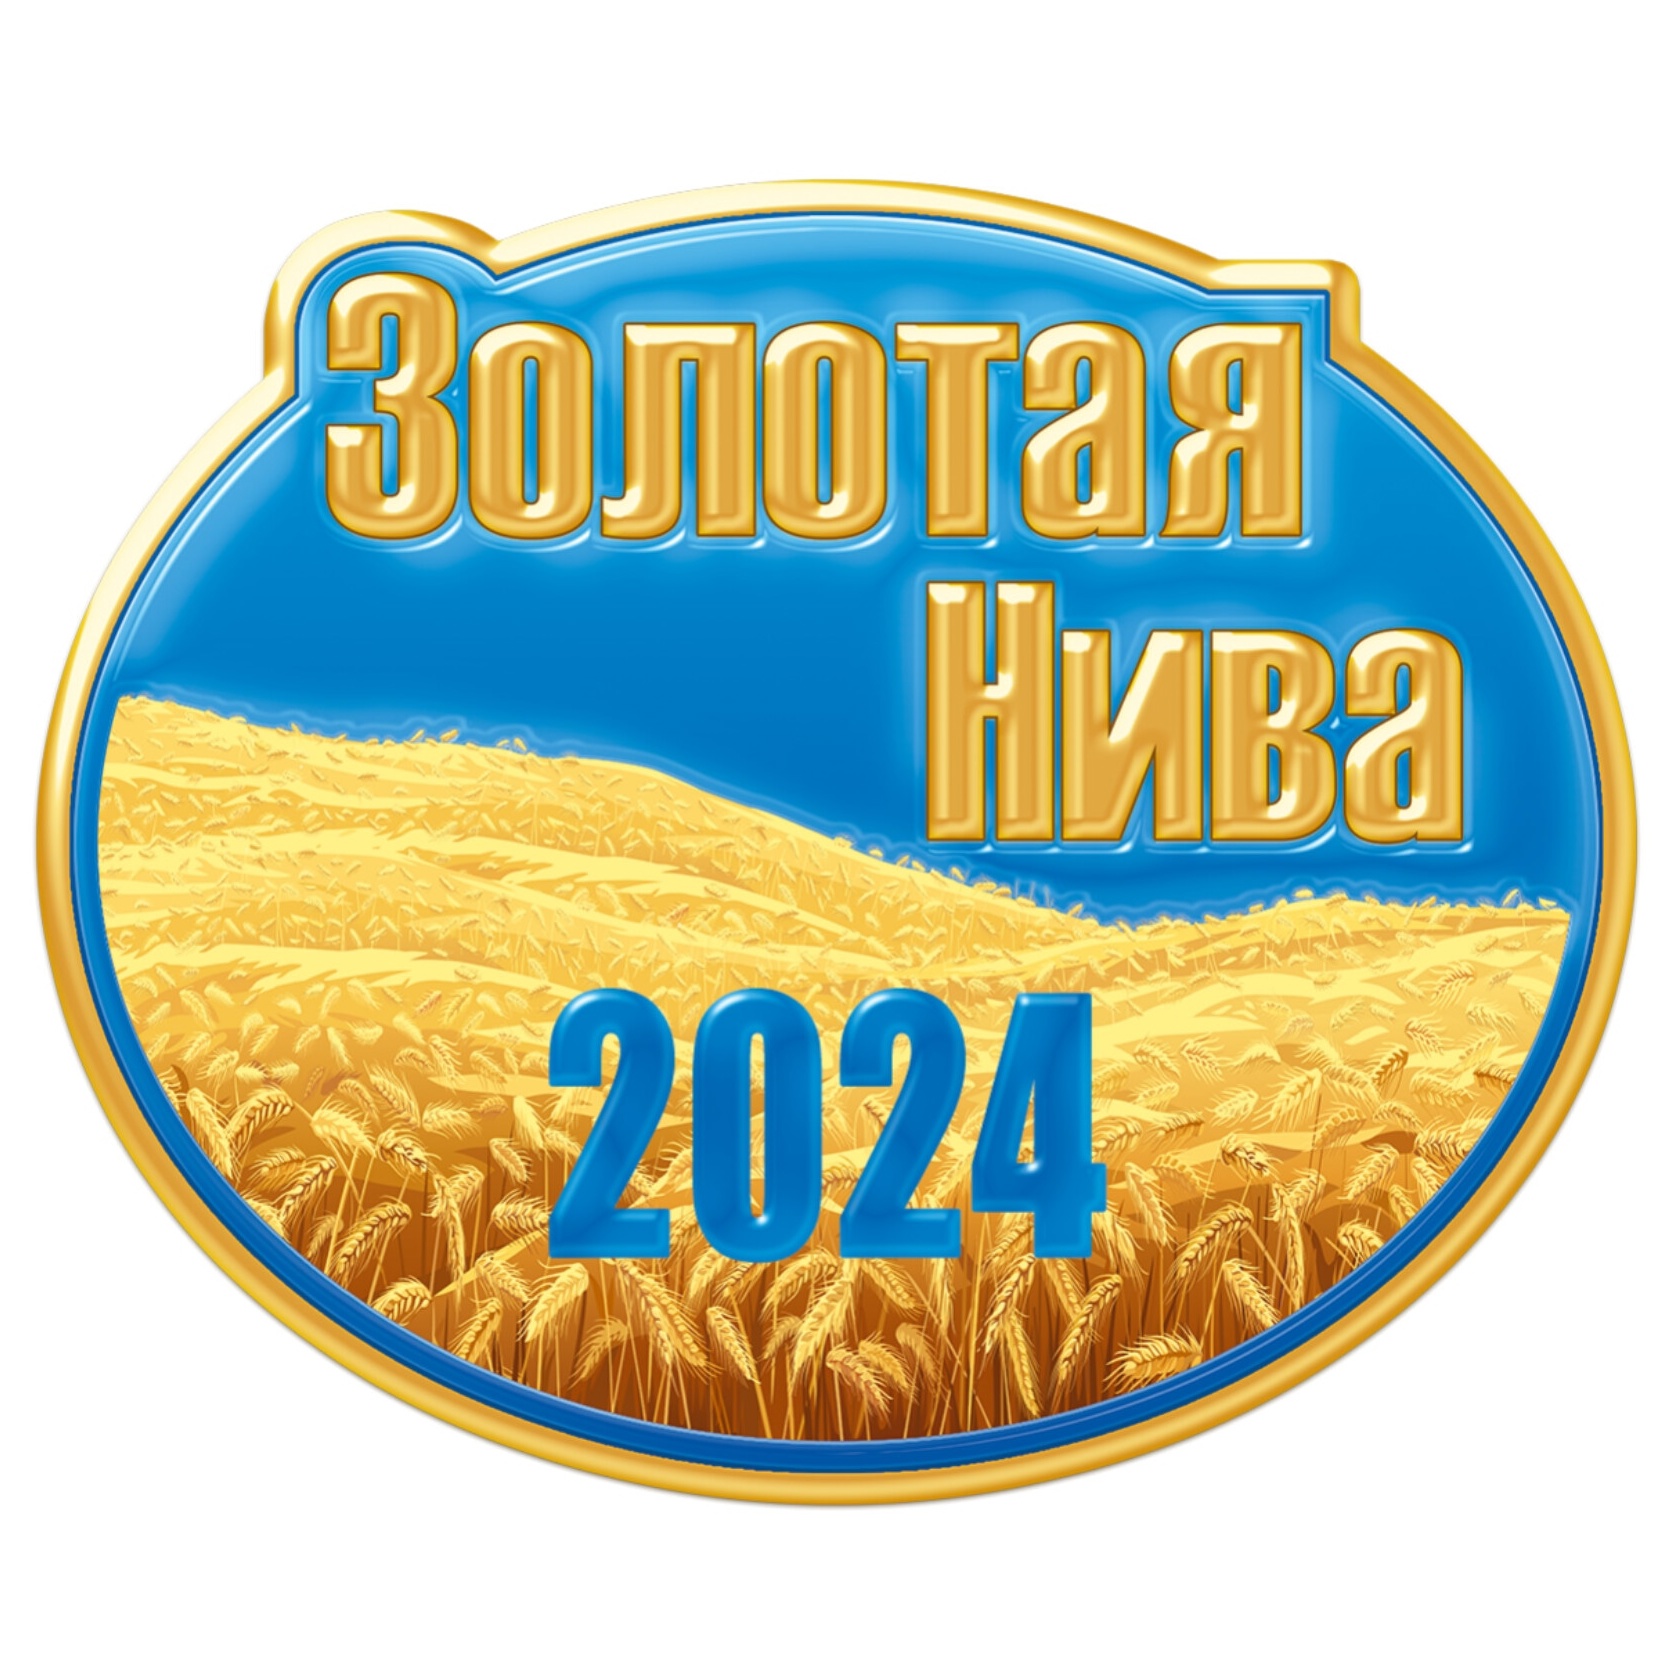 С 28 по 31 мая в Усть-Лабинске пройдет выставка с полевой демонстрацией техники «Золотая Нива»